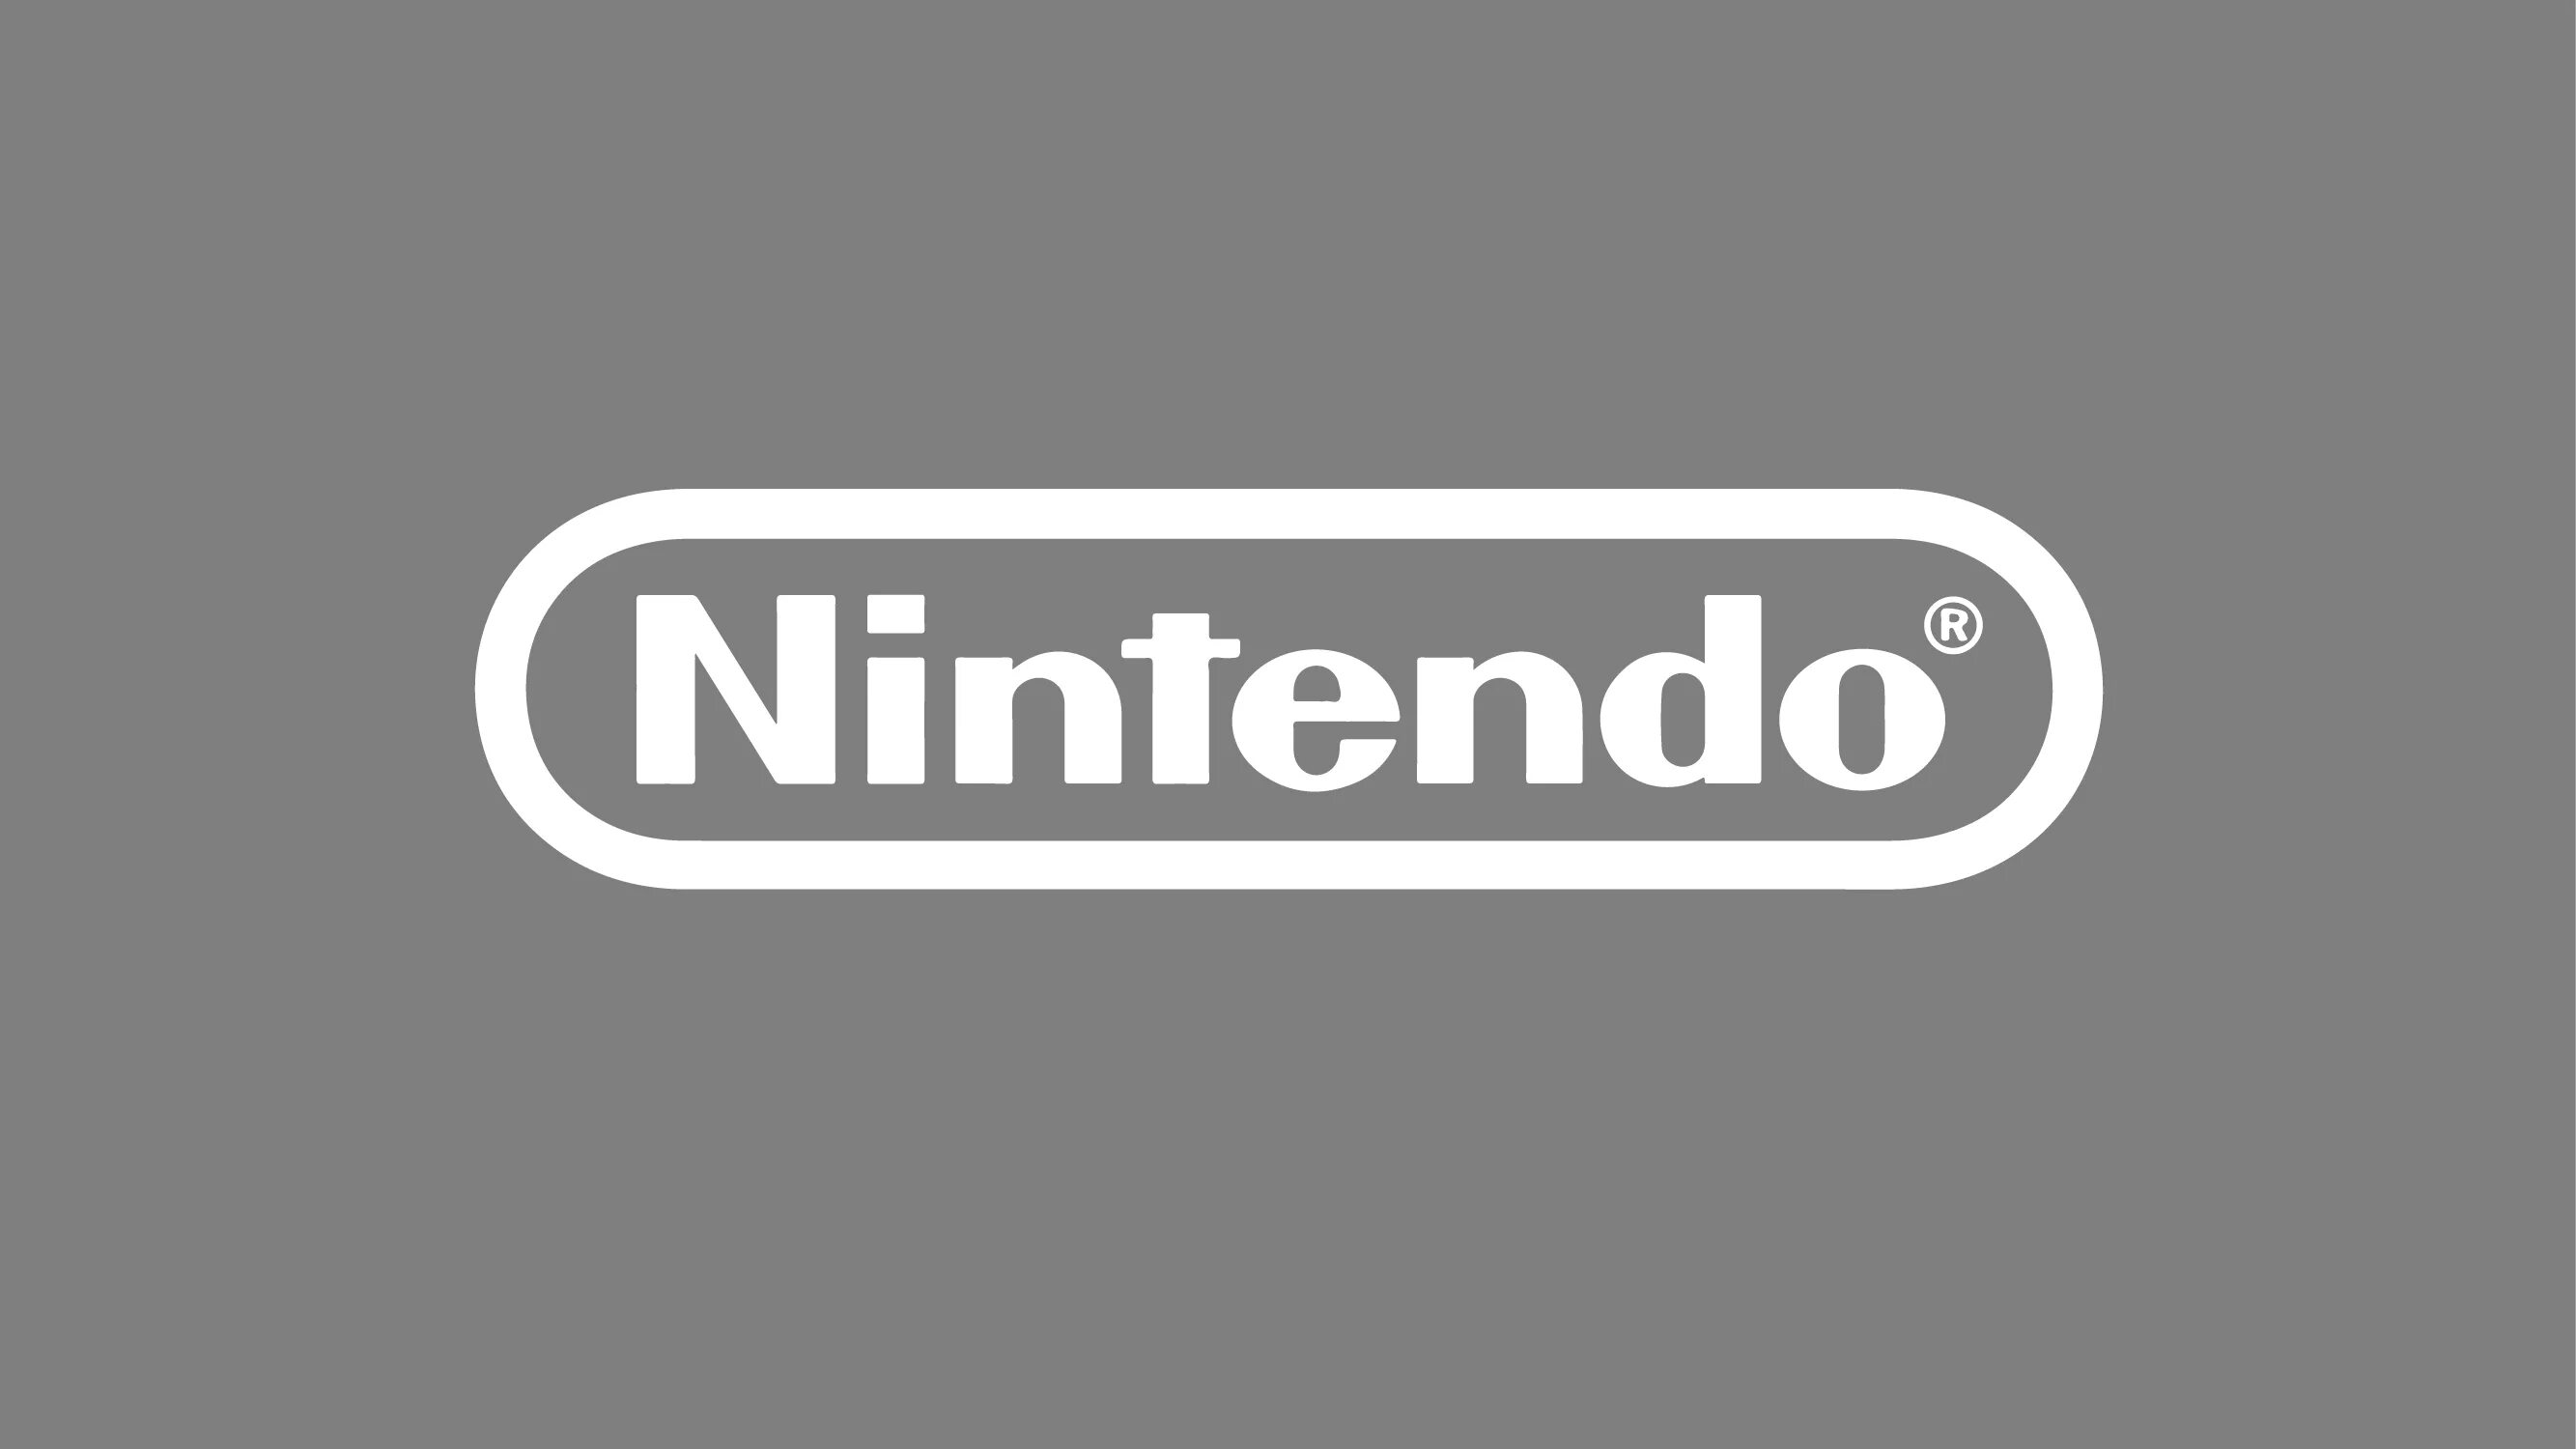 Nintendo войти. Nintendo logo. Нинтендо старый логотип. Nintendo надпись. Nintendo название.